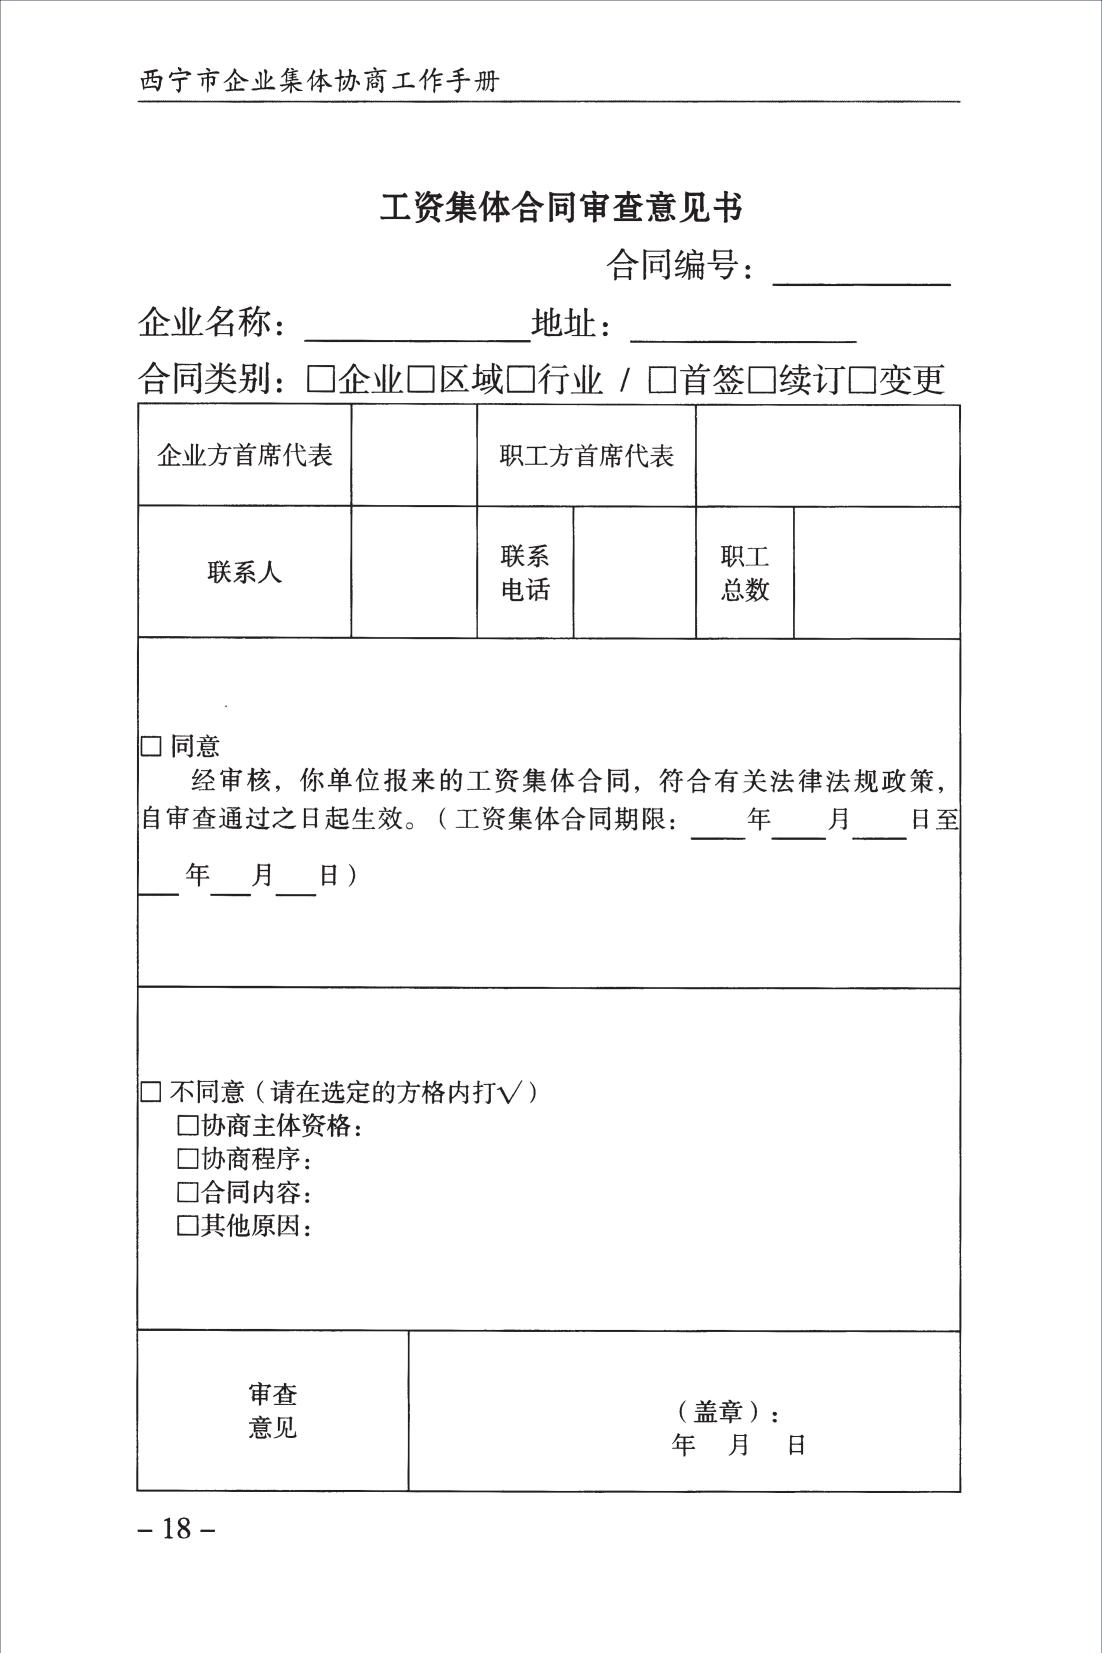 西宁市企业集体协商工作手册_20.jpg